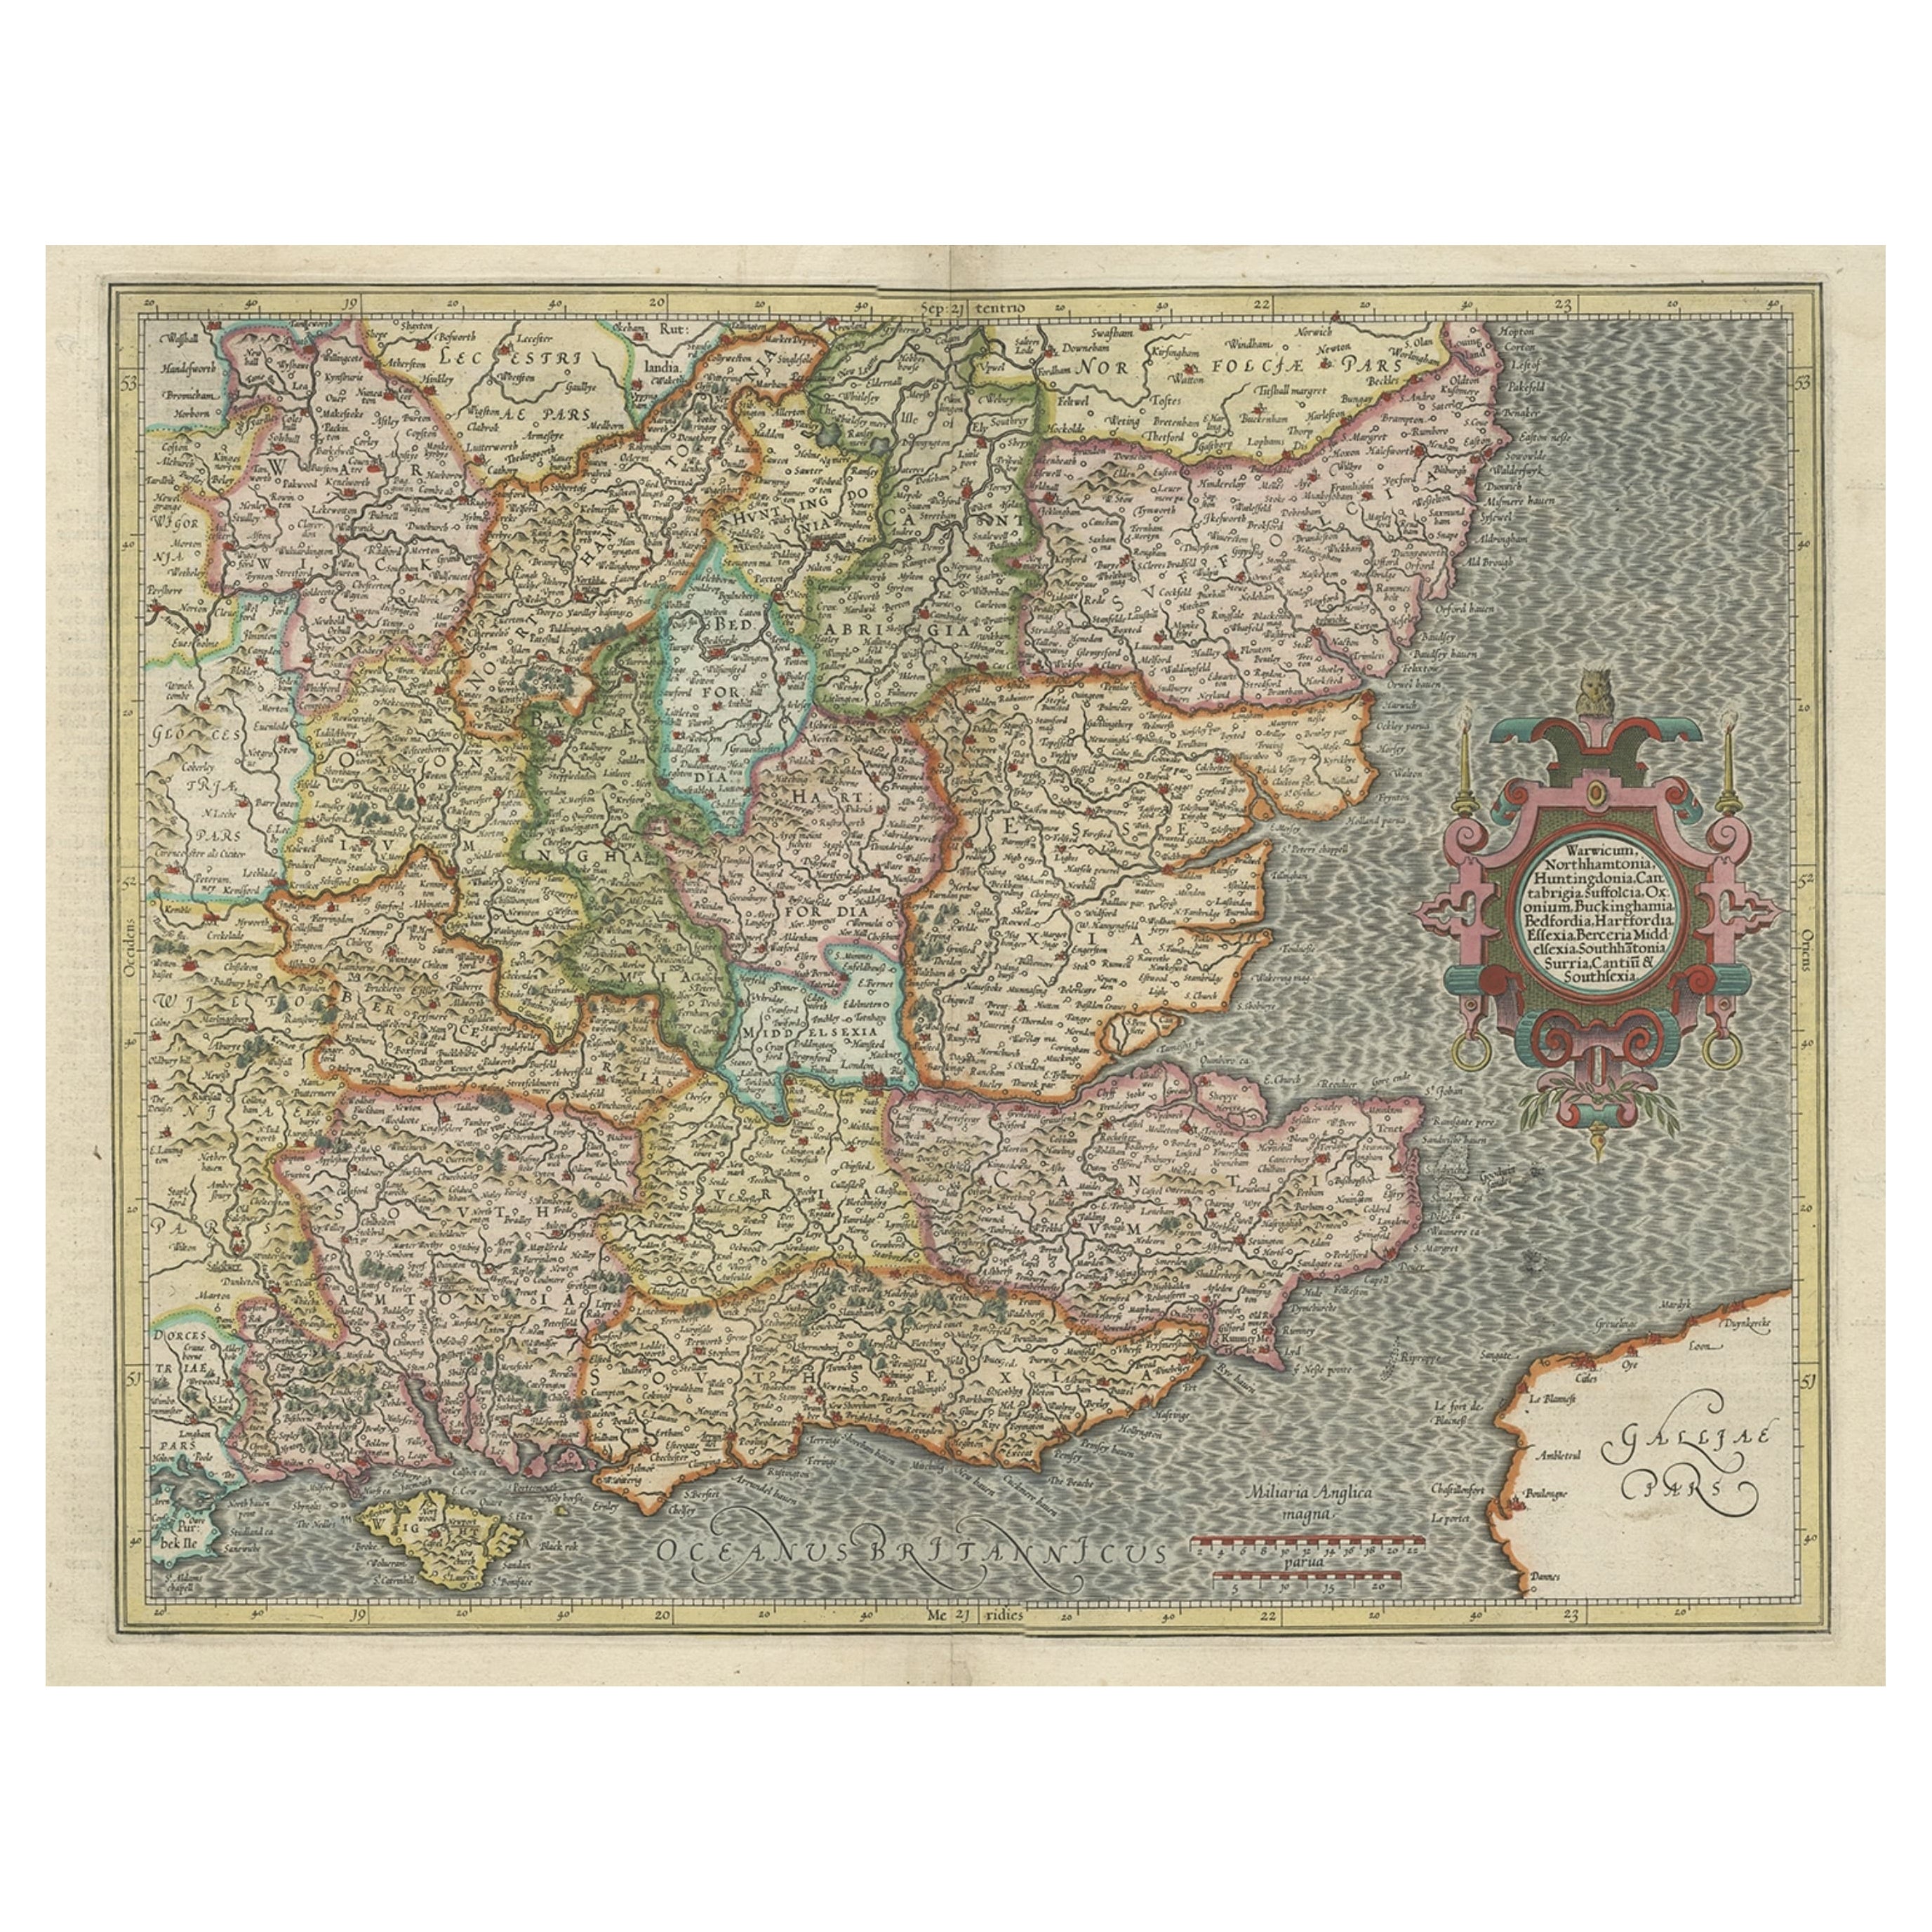 Carte originale de l'Angleterre du Sud-Est Incl London, Oxford, Cambridge, Etc, 1633